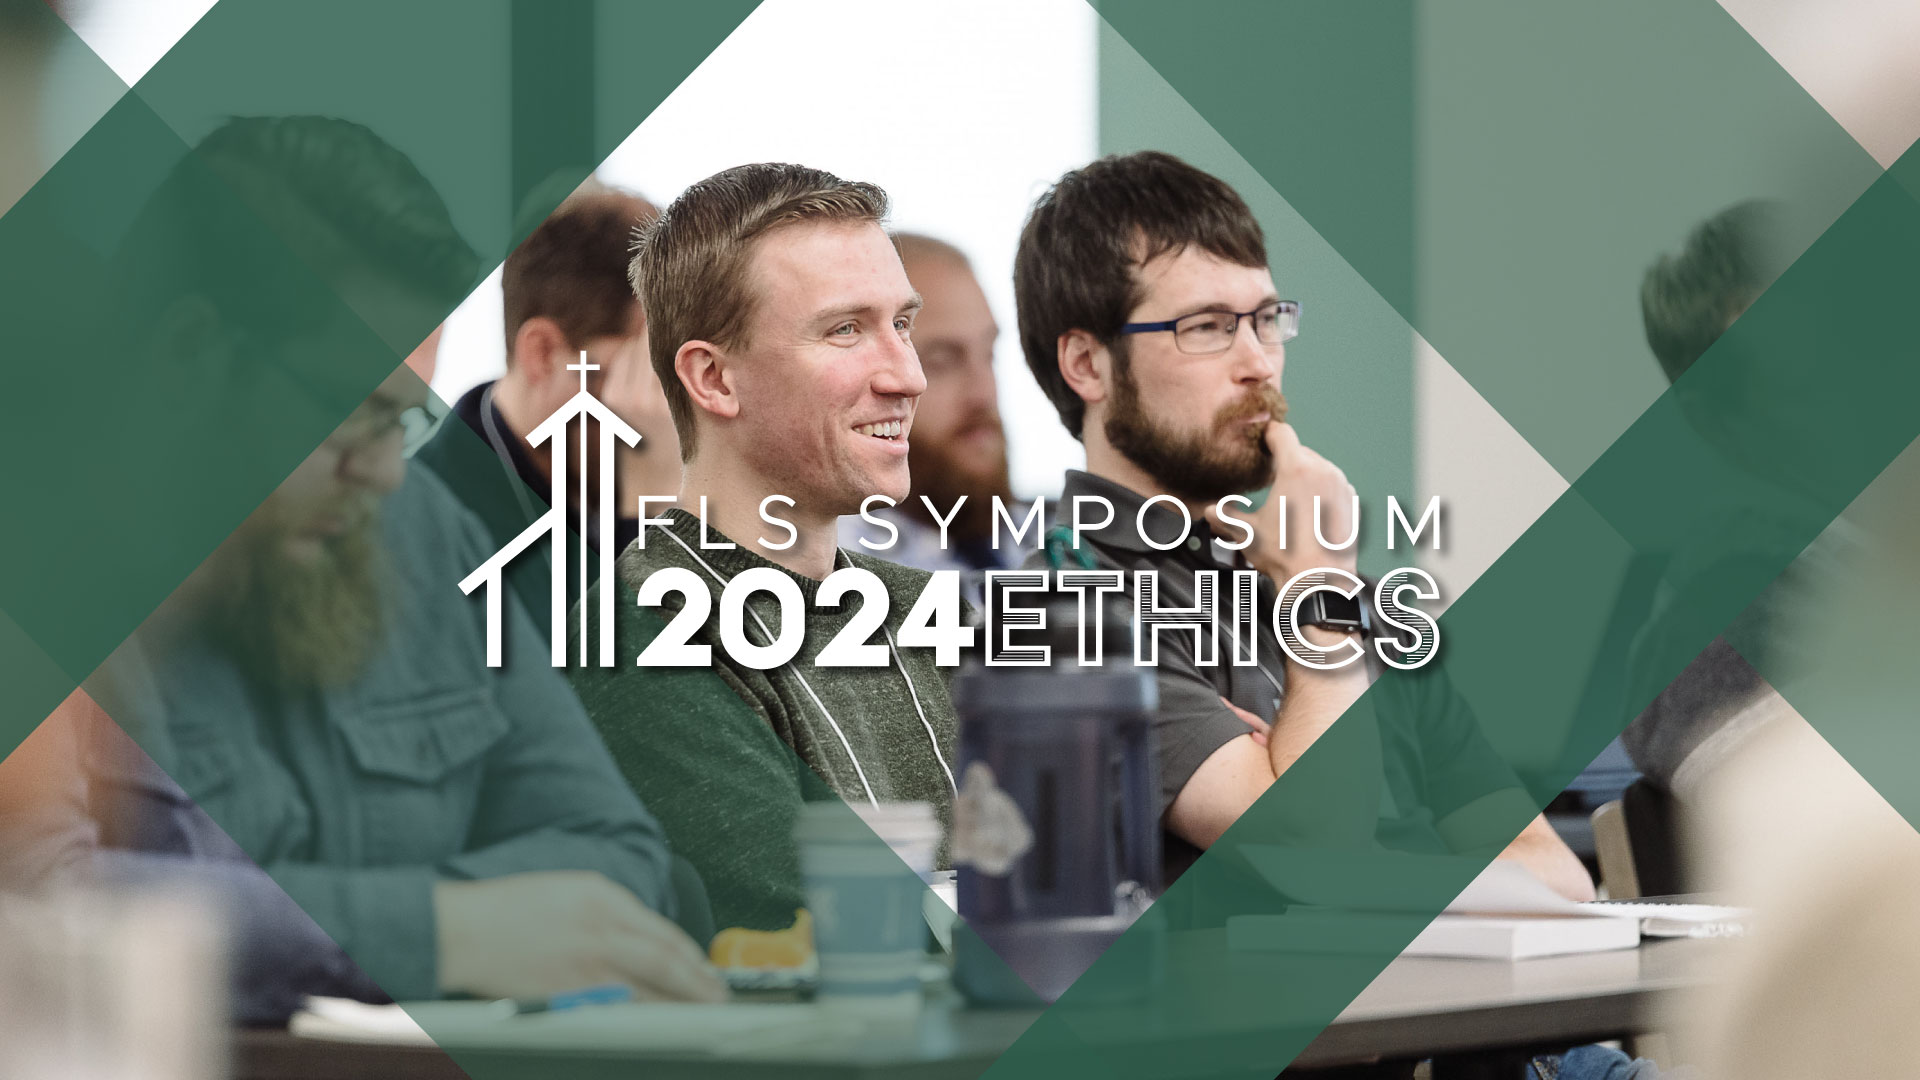 Featured image for “FLS Symposium 2024”